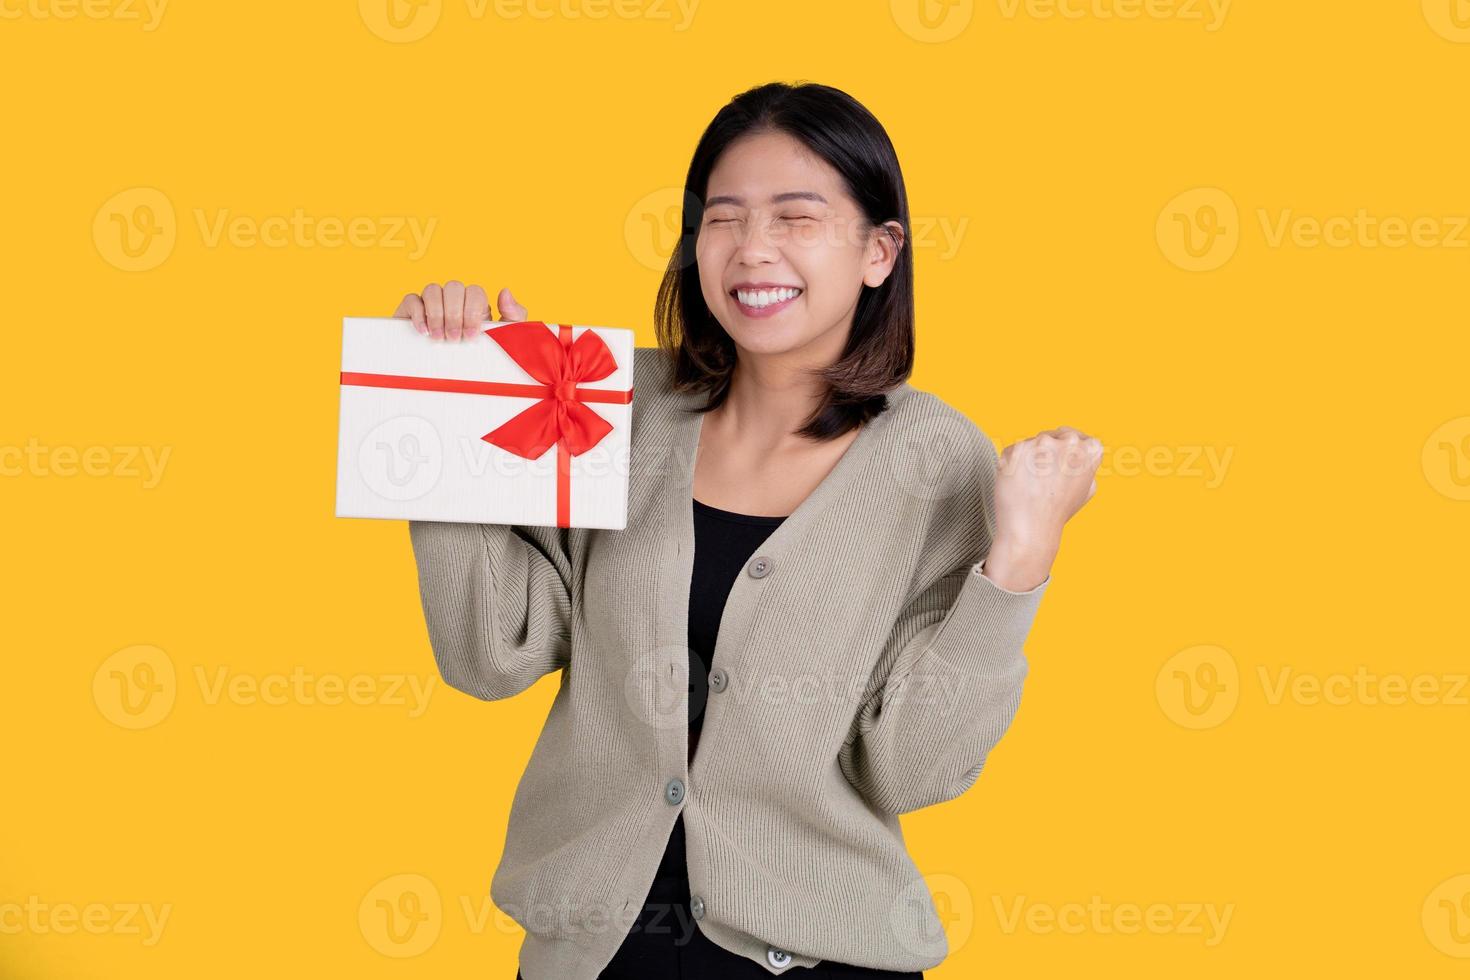 heureuse belle femme asiatique isolée sur fond jaune vif. elle était enthousiasmée par le bon dans sa main et faisait un geste gagnant. photo